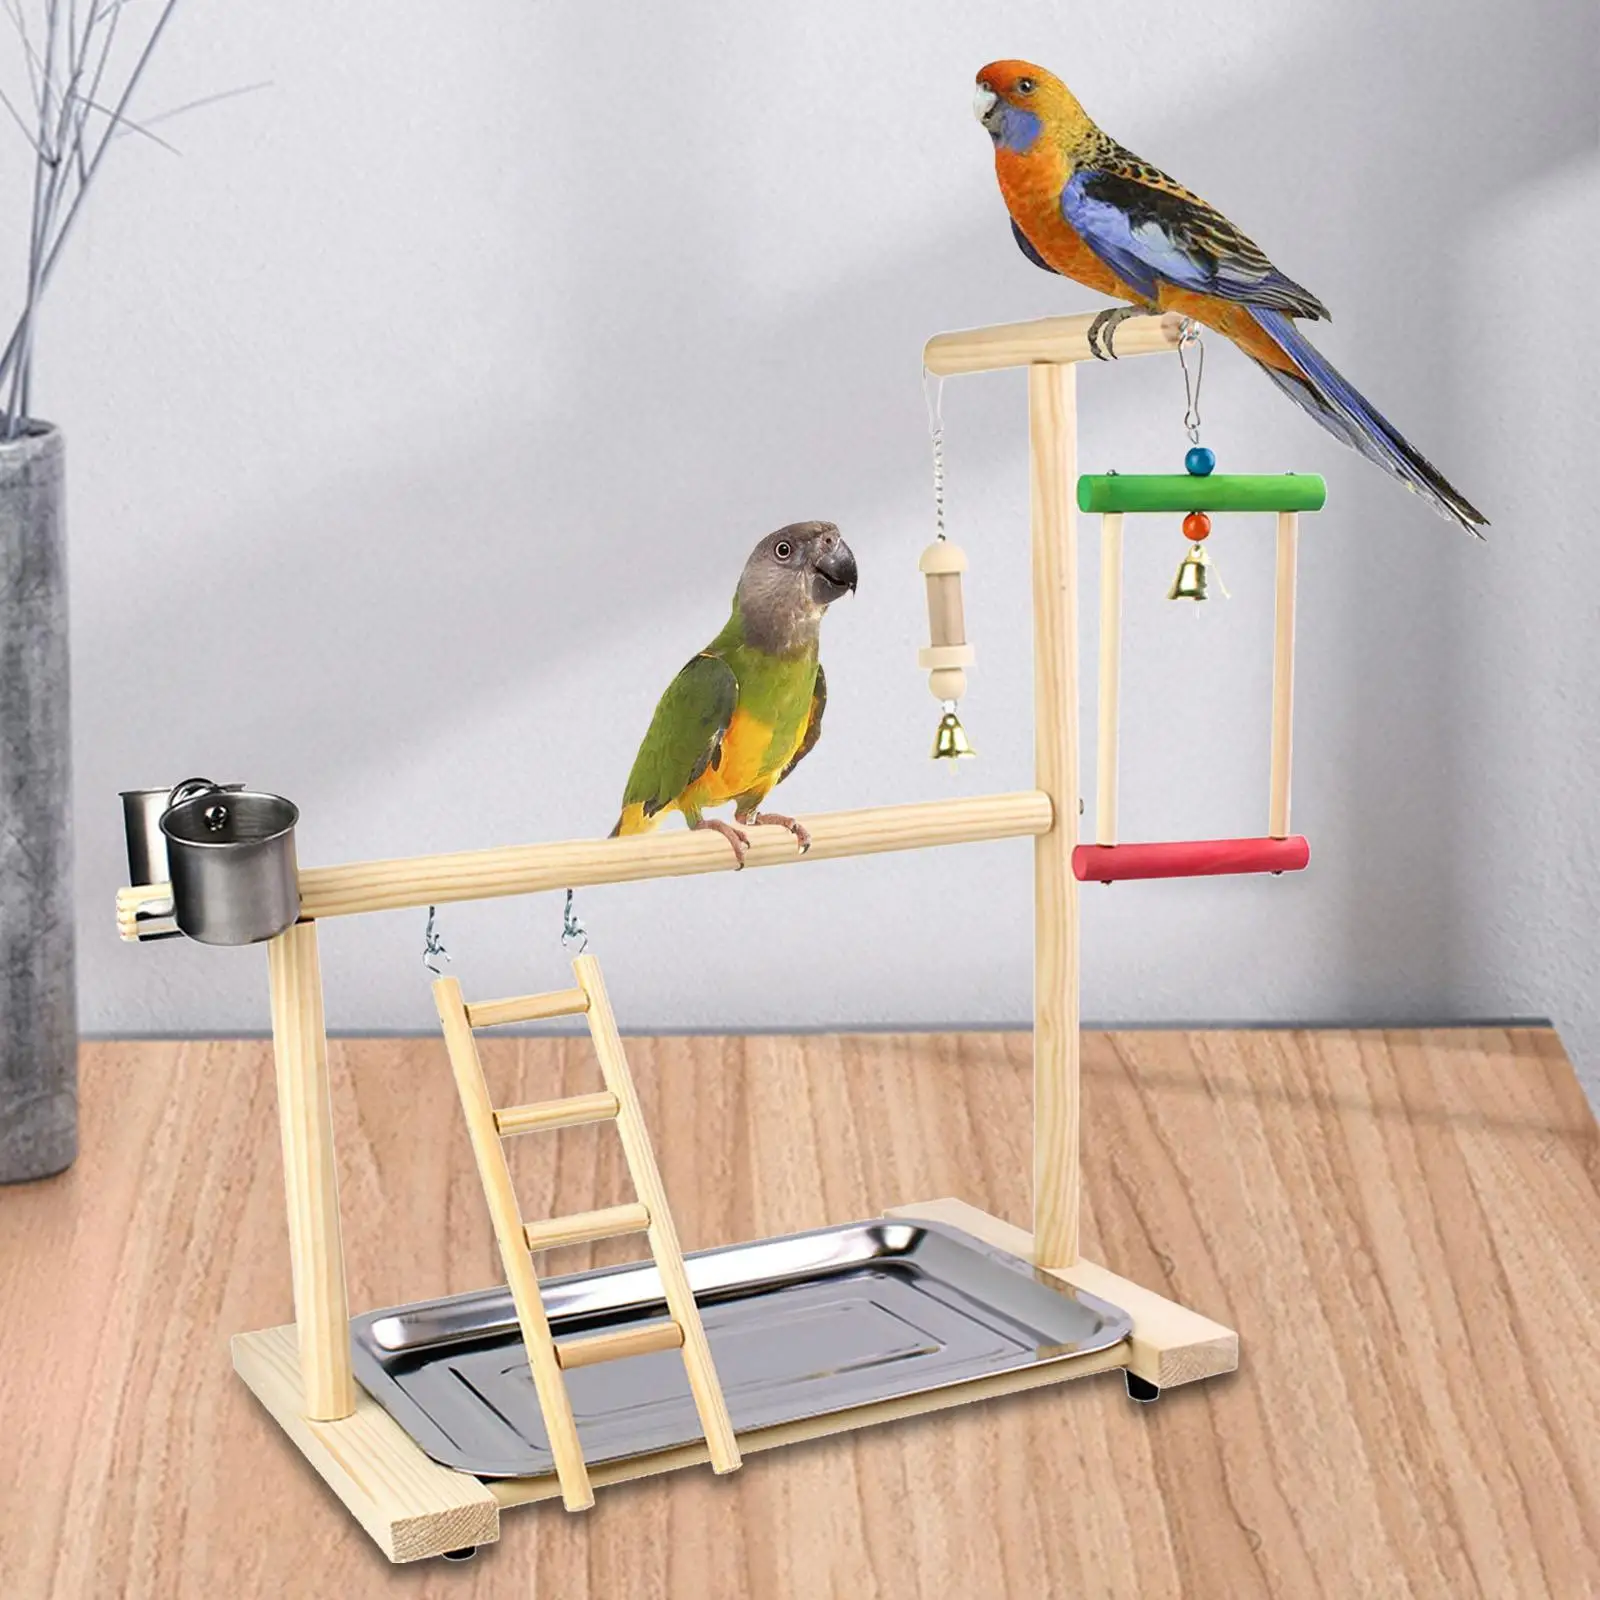 Wooden Bird Platform Perch Bird Playground with Tray Bird Play Stand Gym